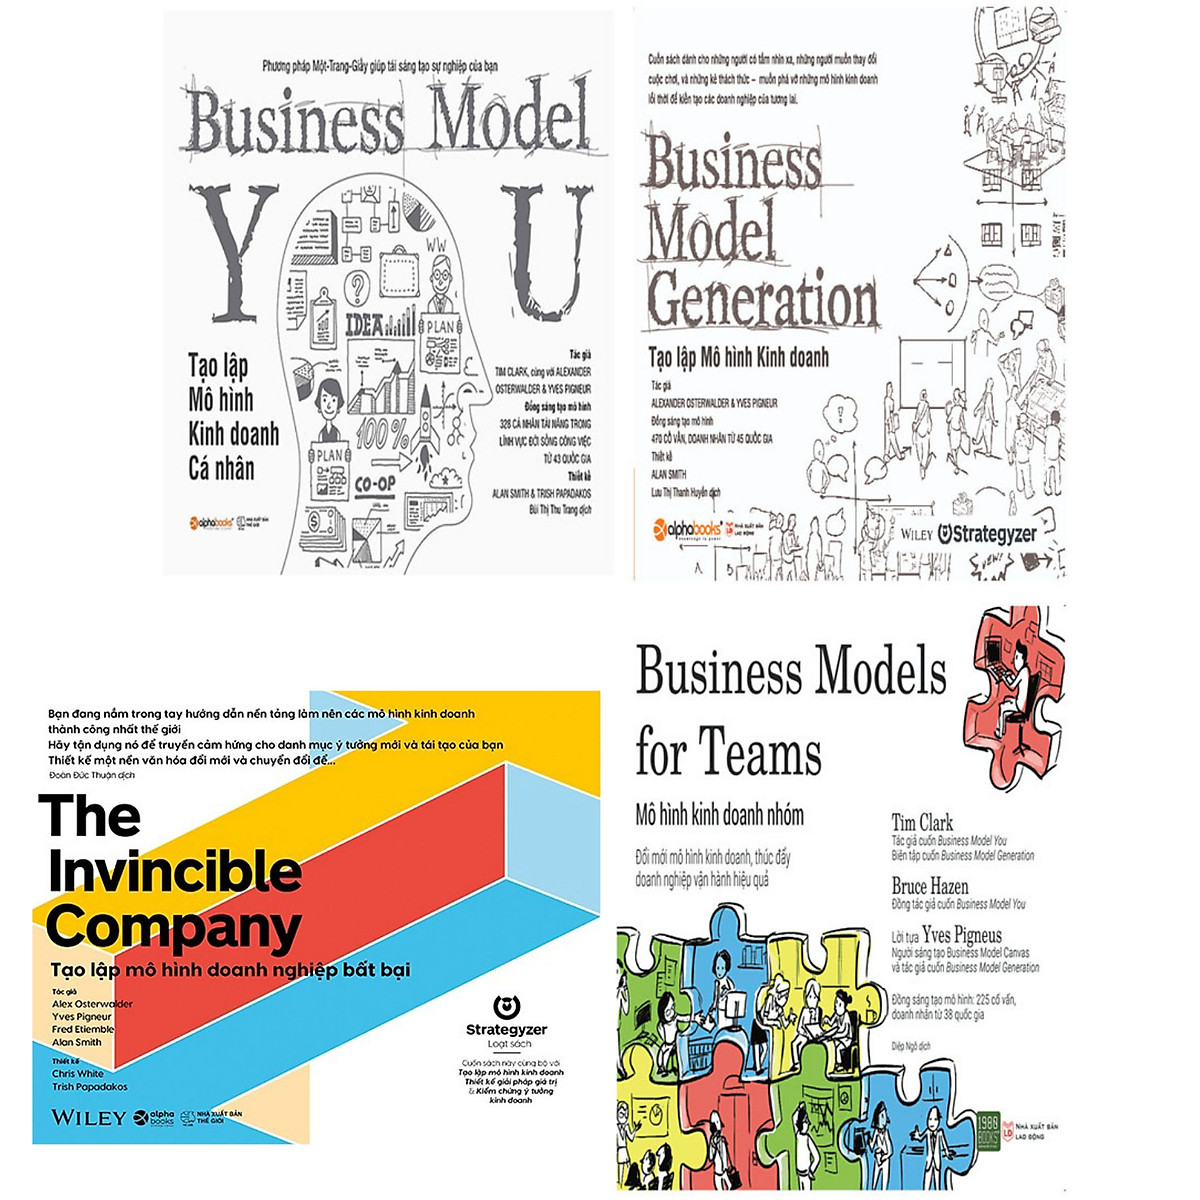 Mua Sách Business Model Generation  Tạo Lập Mô Hình Kinh Doanh Tái Bản   Alphabooks  BẢN QUYỀN  Tiki